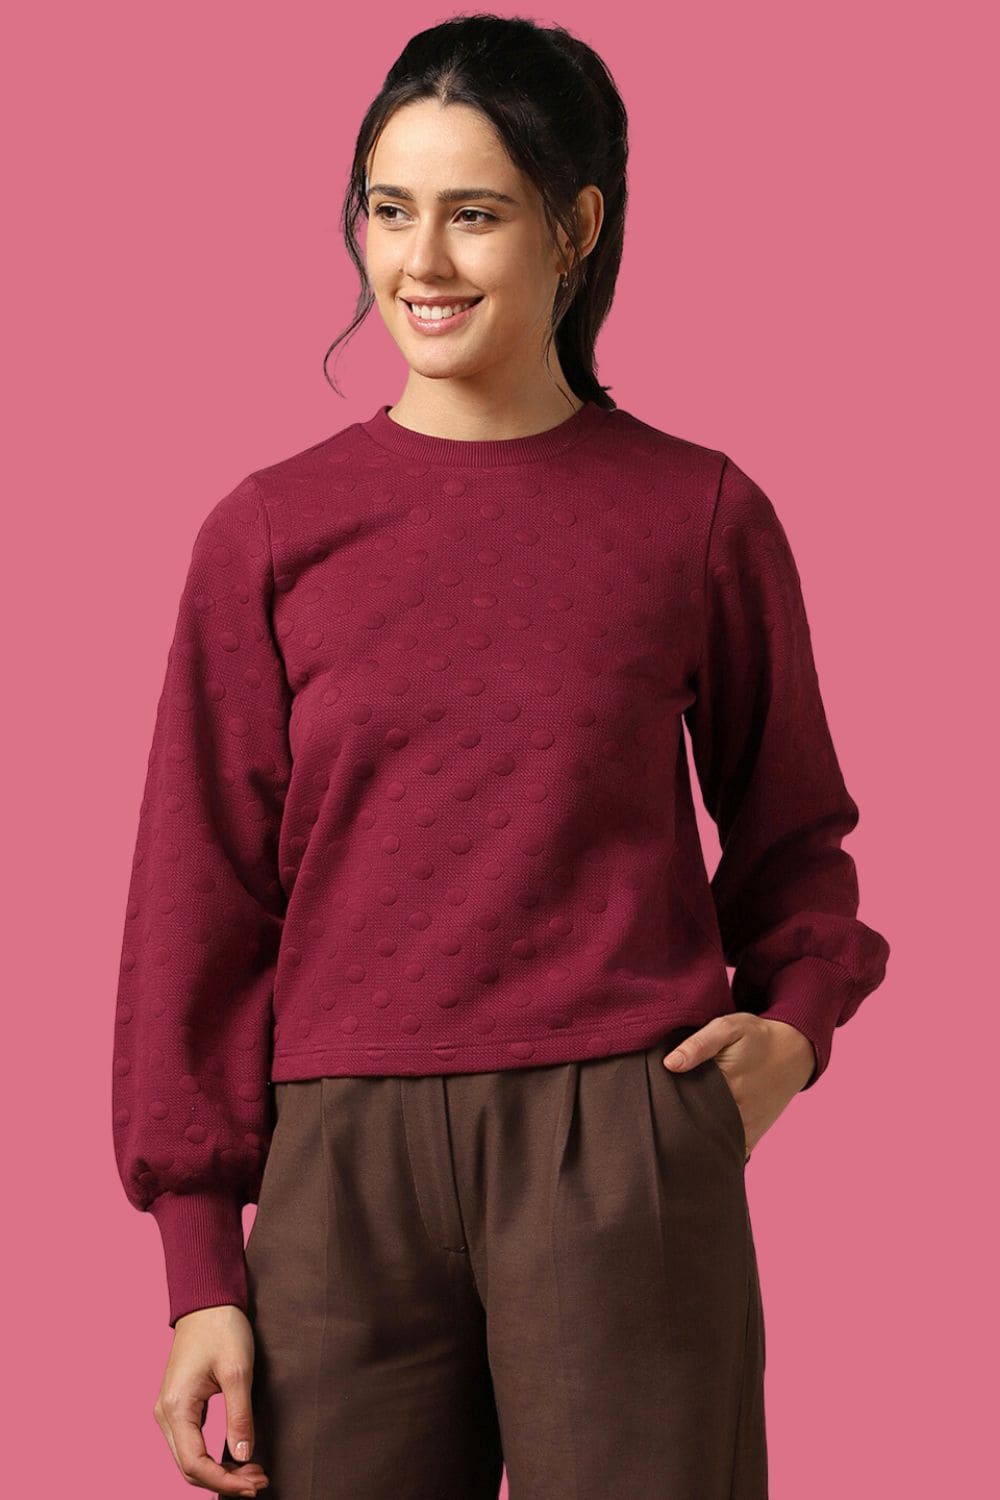 Women Bubble Knit Self Design Pullover